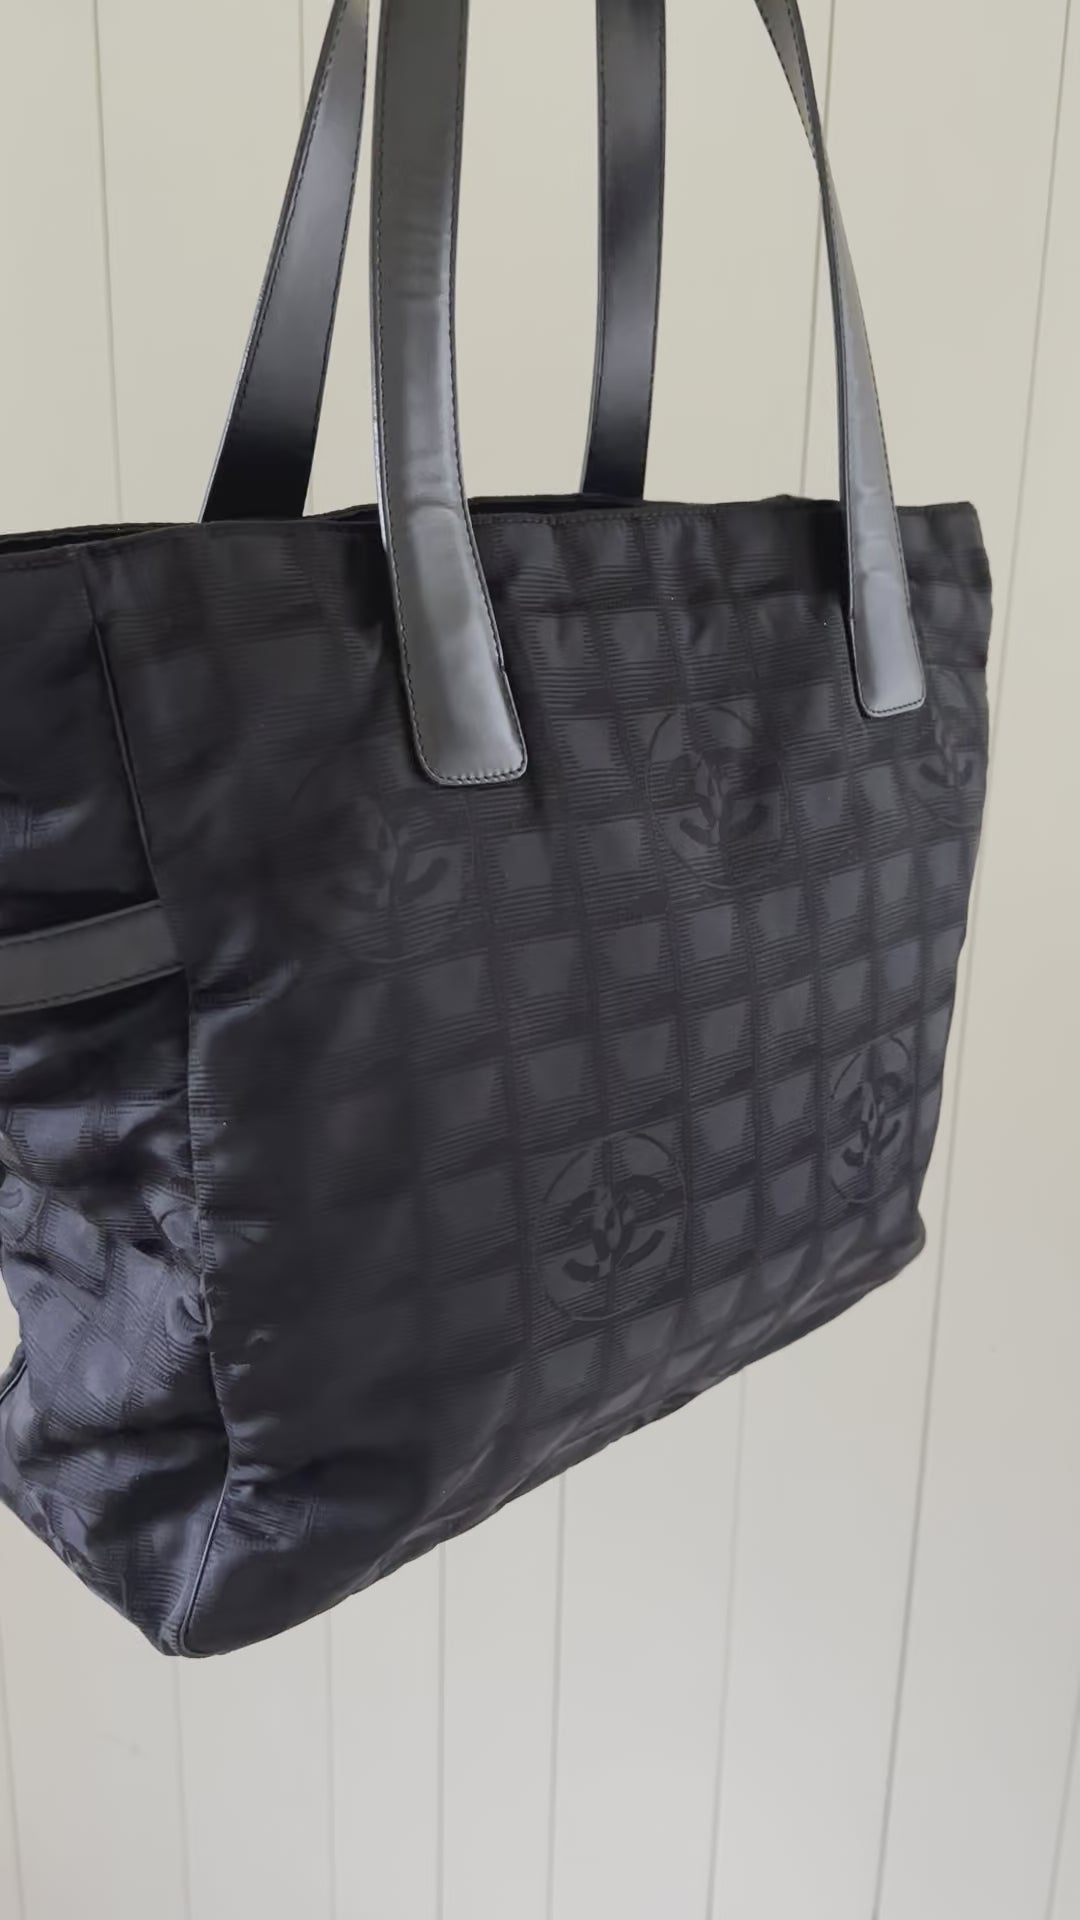 Chanel Medium Travel Ligne Tote - Black Totes, Handbags - CHA891418